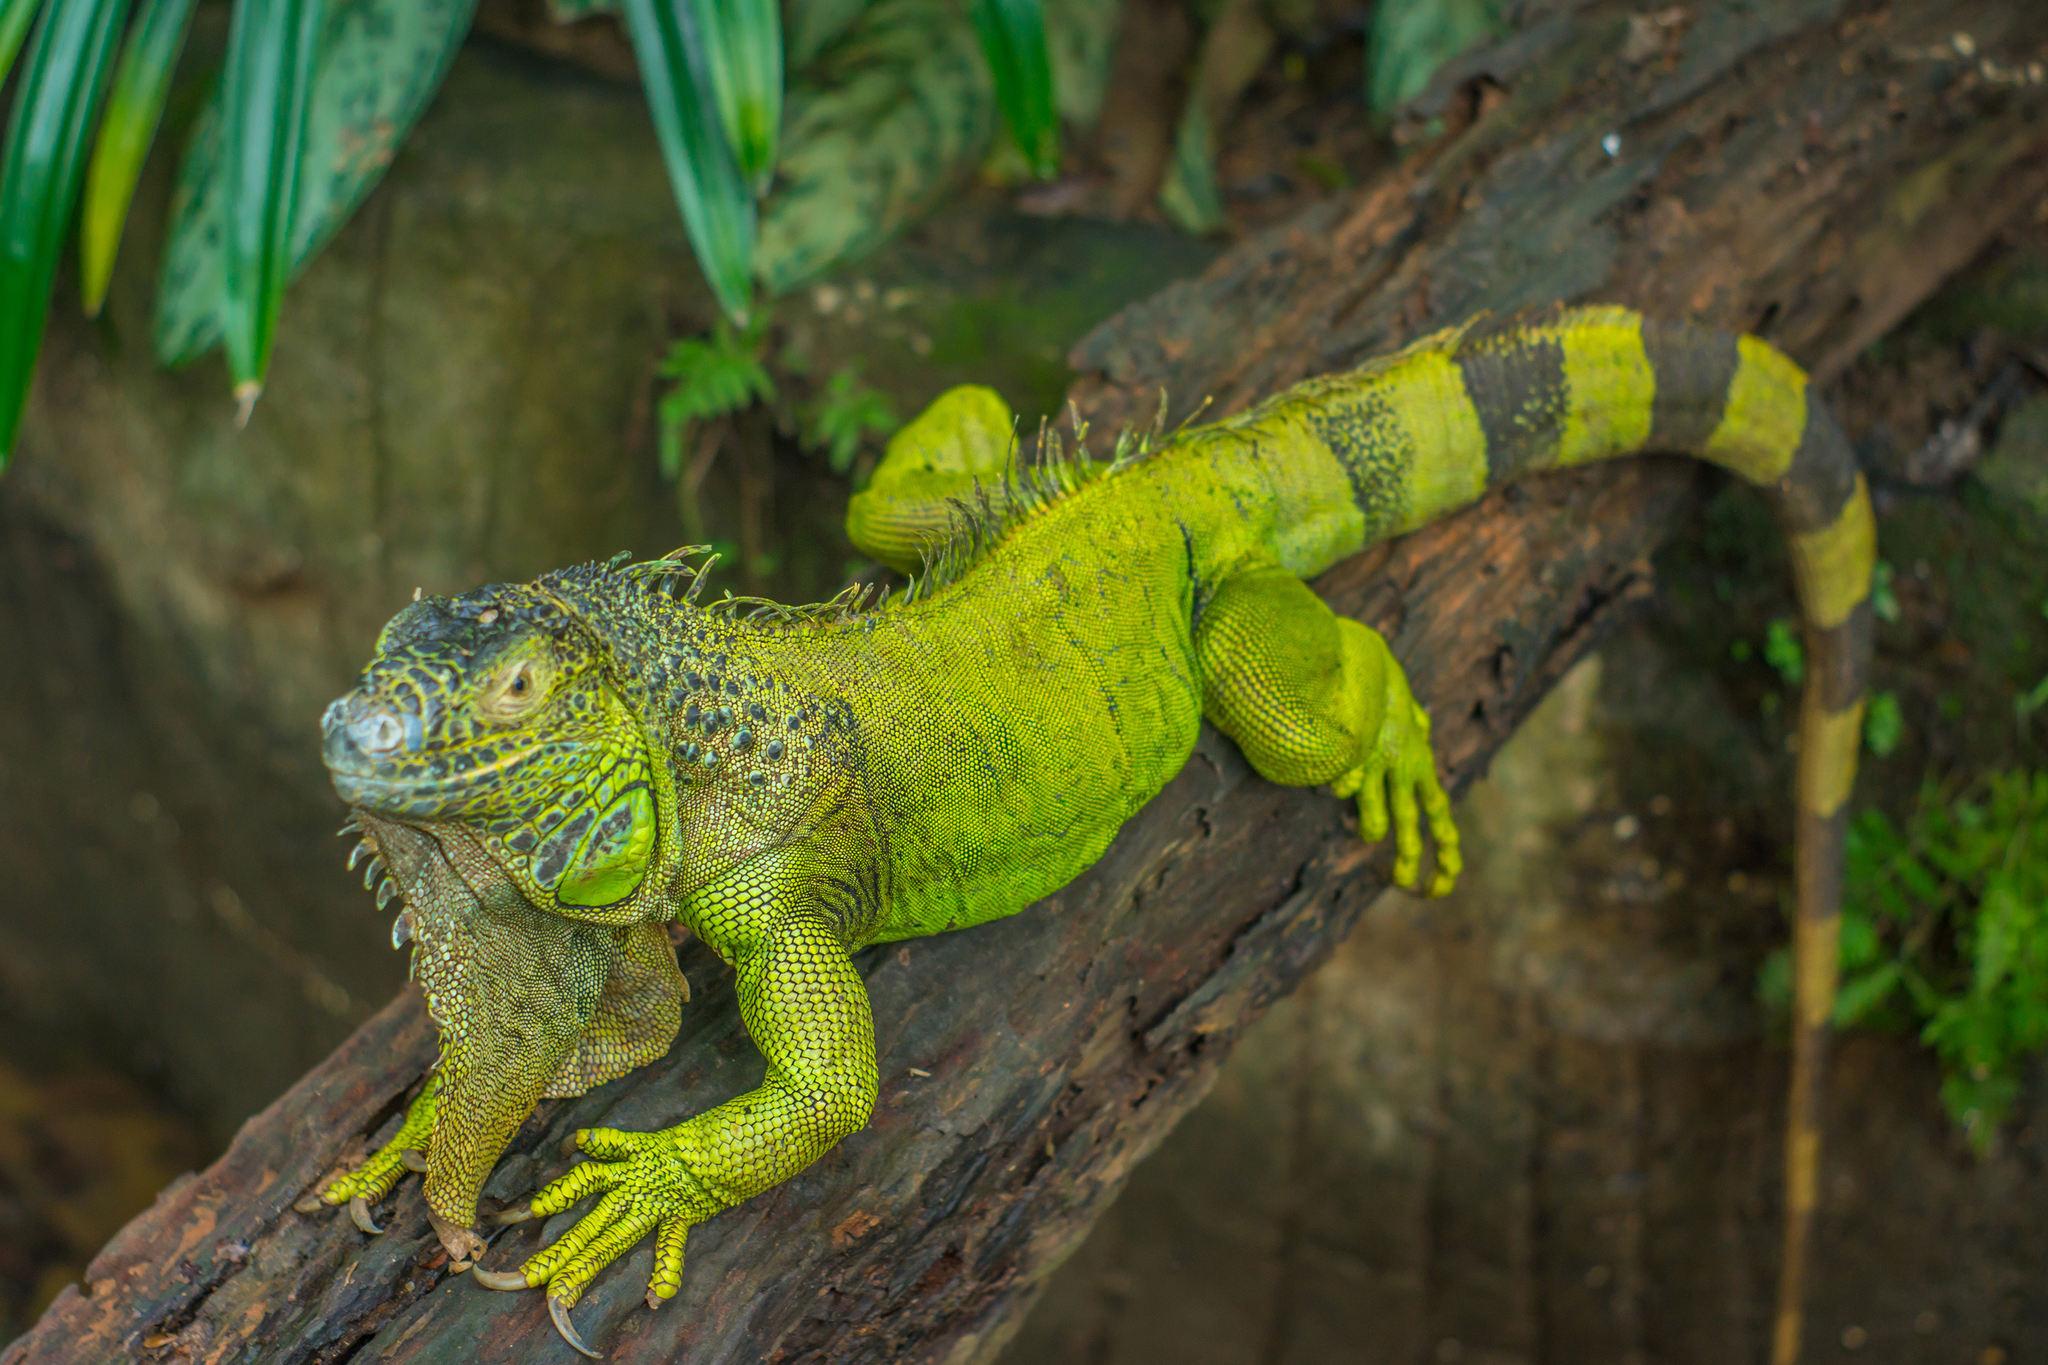 Uma iguana verde estava descansando em um galho de madeira de espiga depois de uma refeição